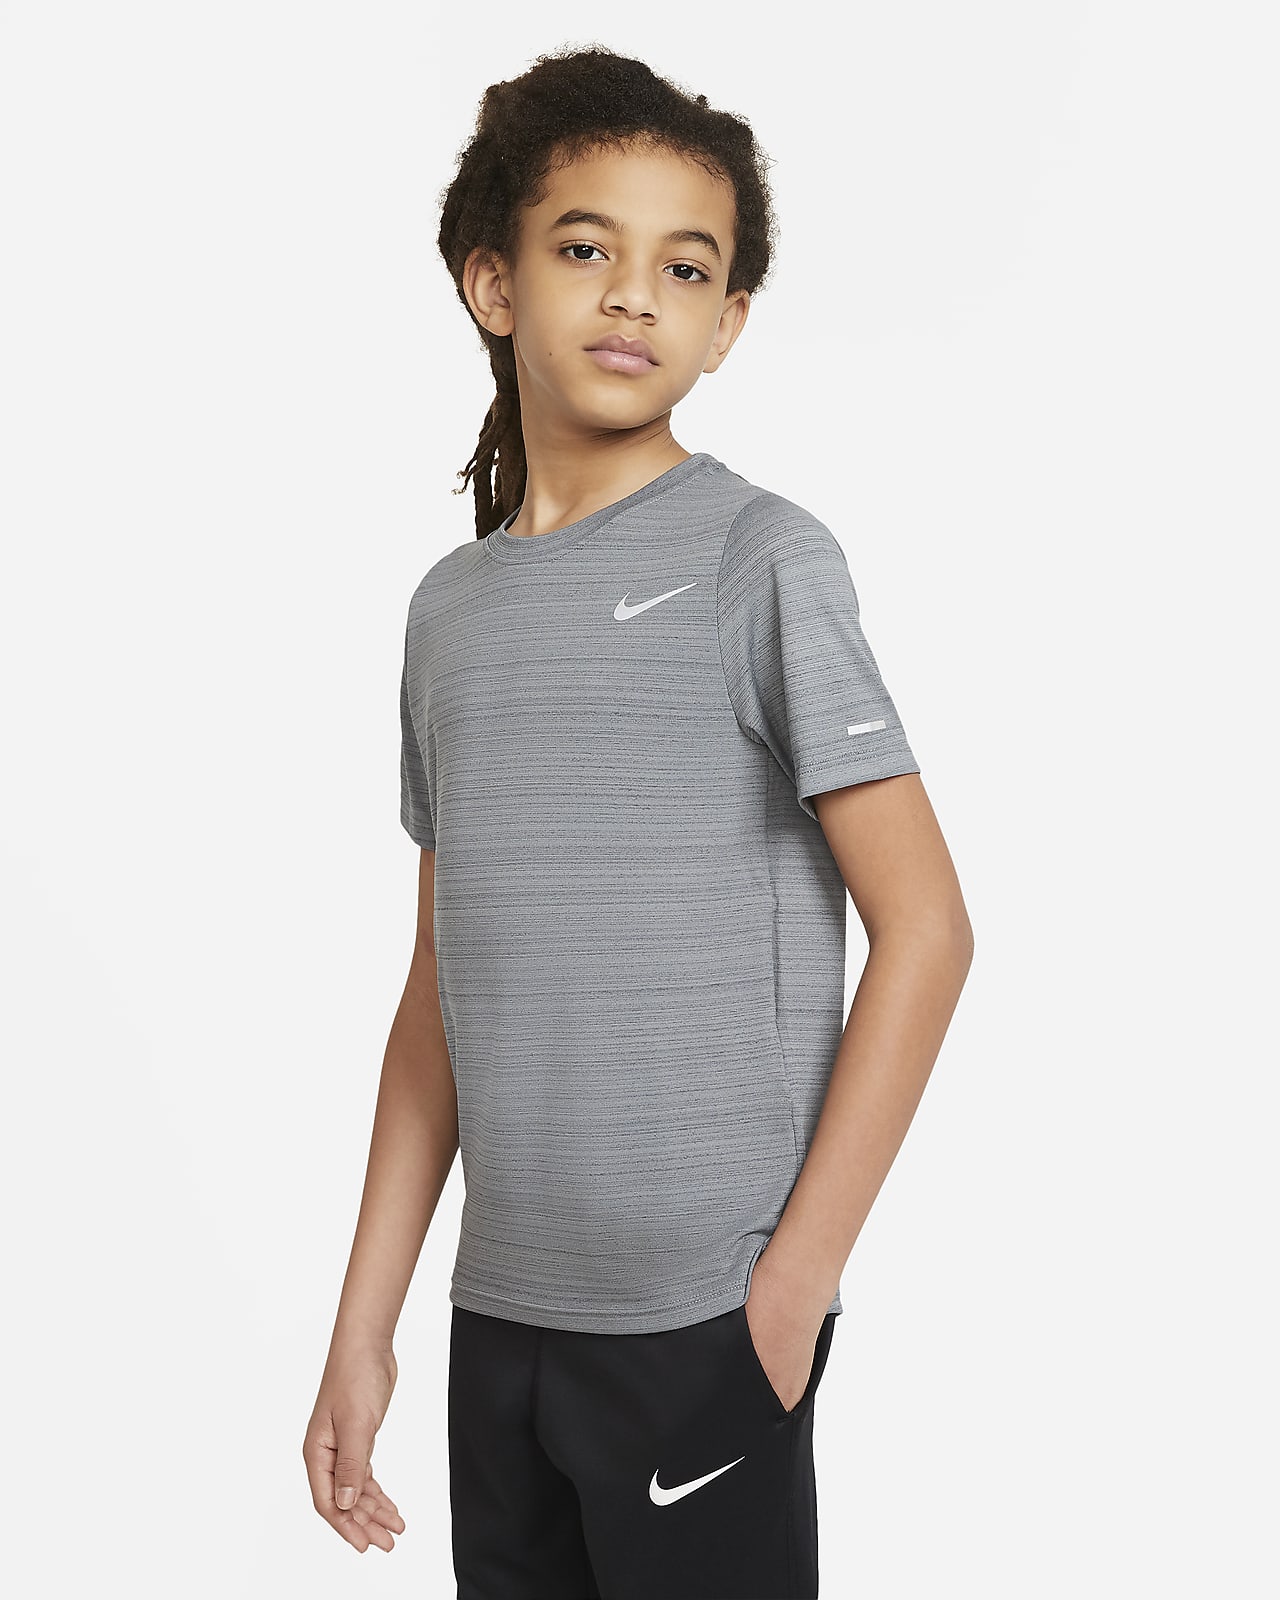 Träningströja Nike Dri-FIT Miler för ungdom (killar)